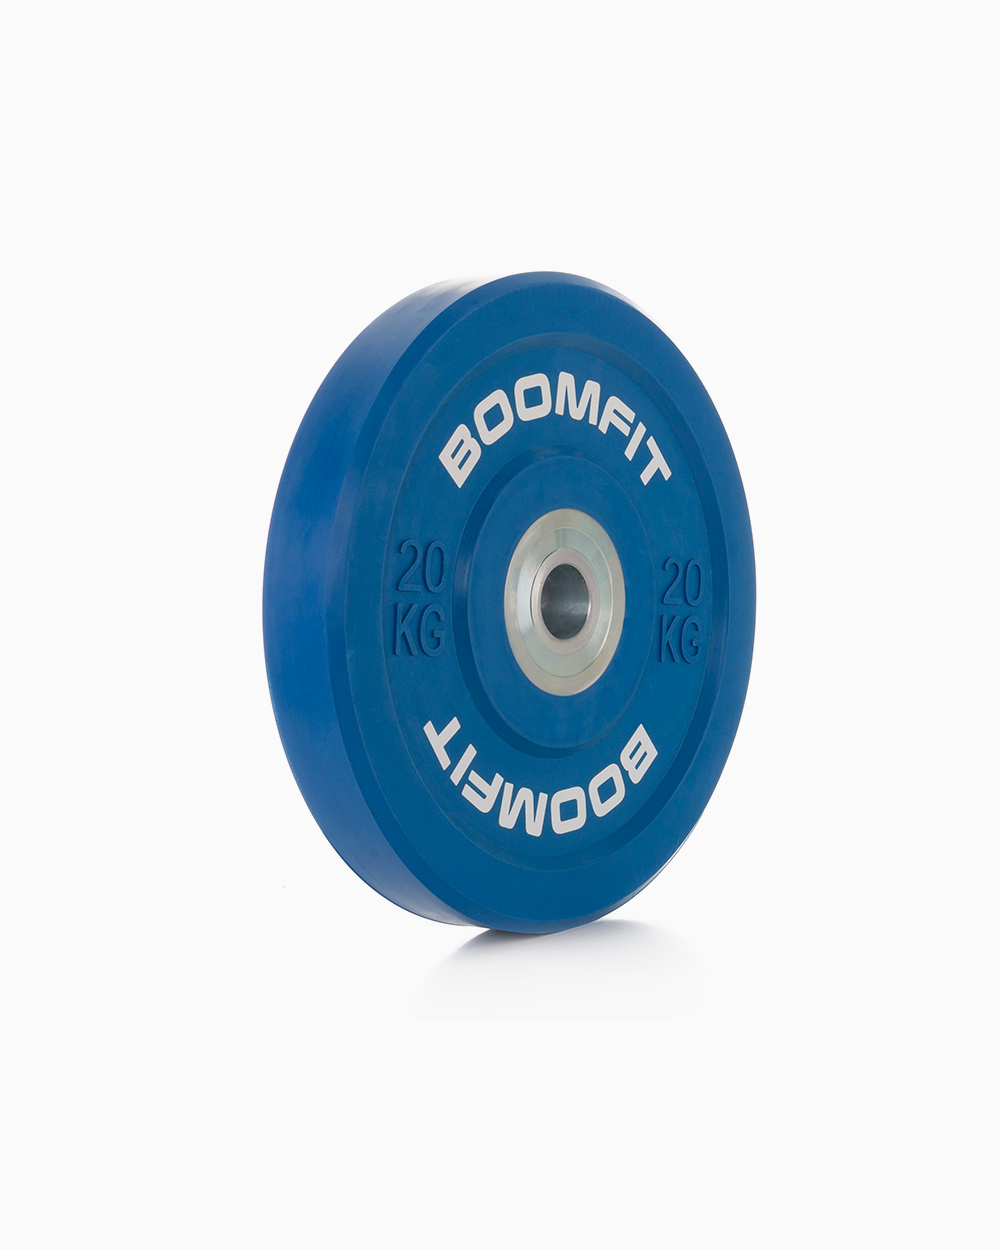 Disco De Competición Boomfit 20kg - azul - 